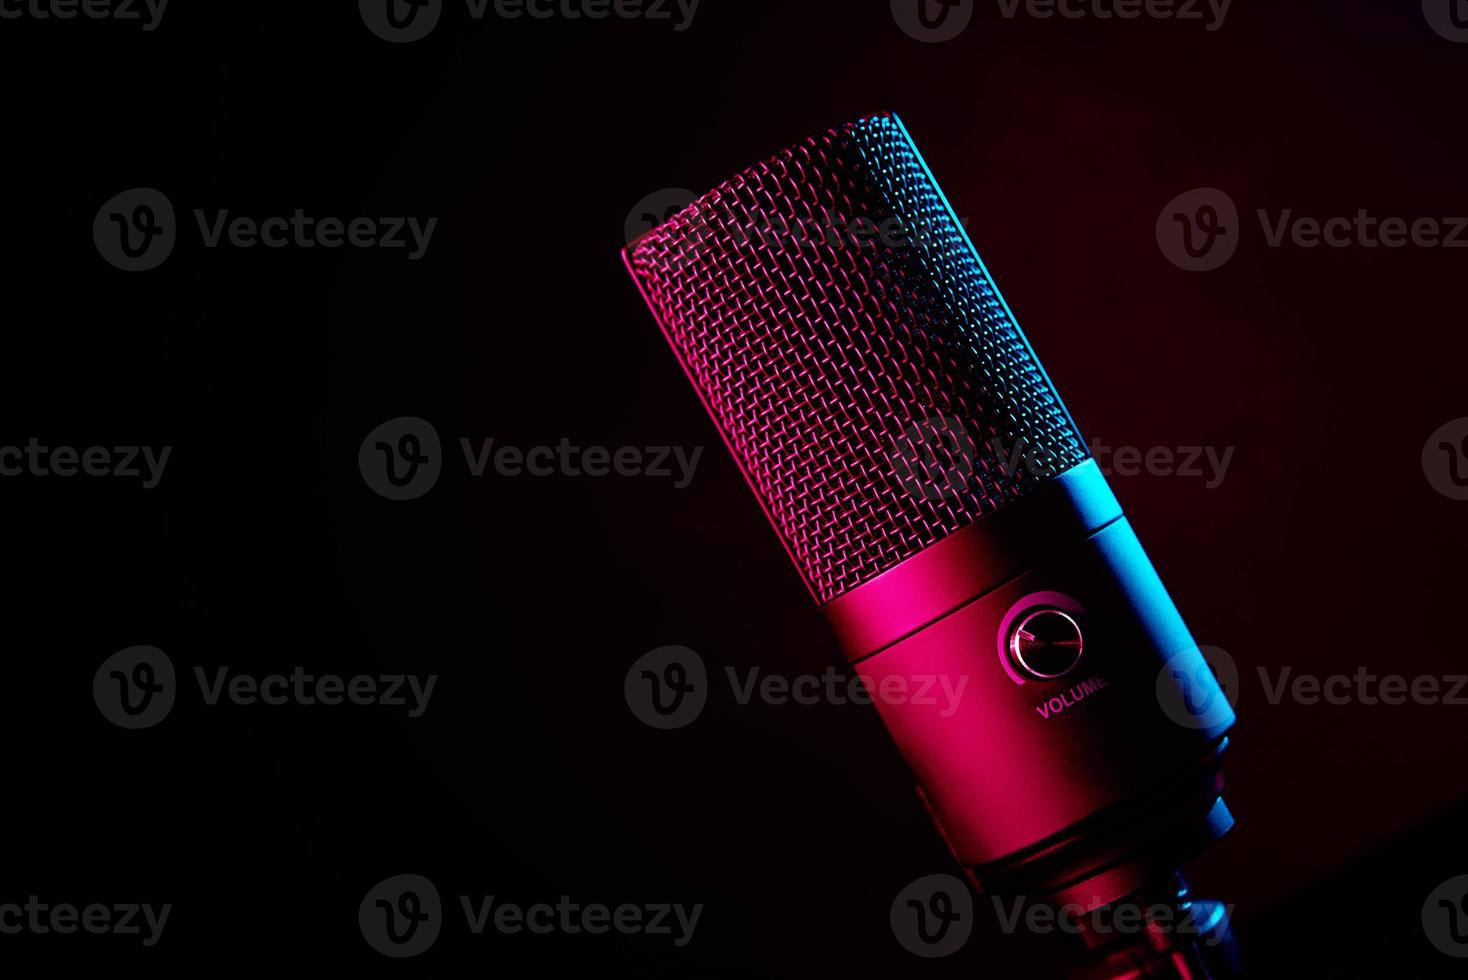 microphone de studio sur fond sombre avec des néons photo